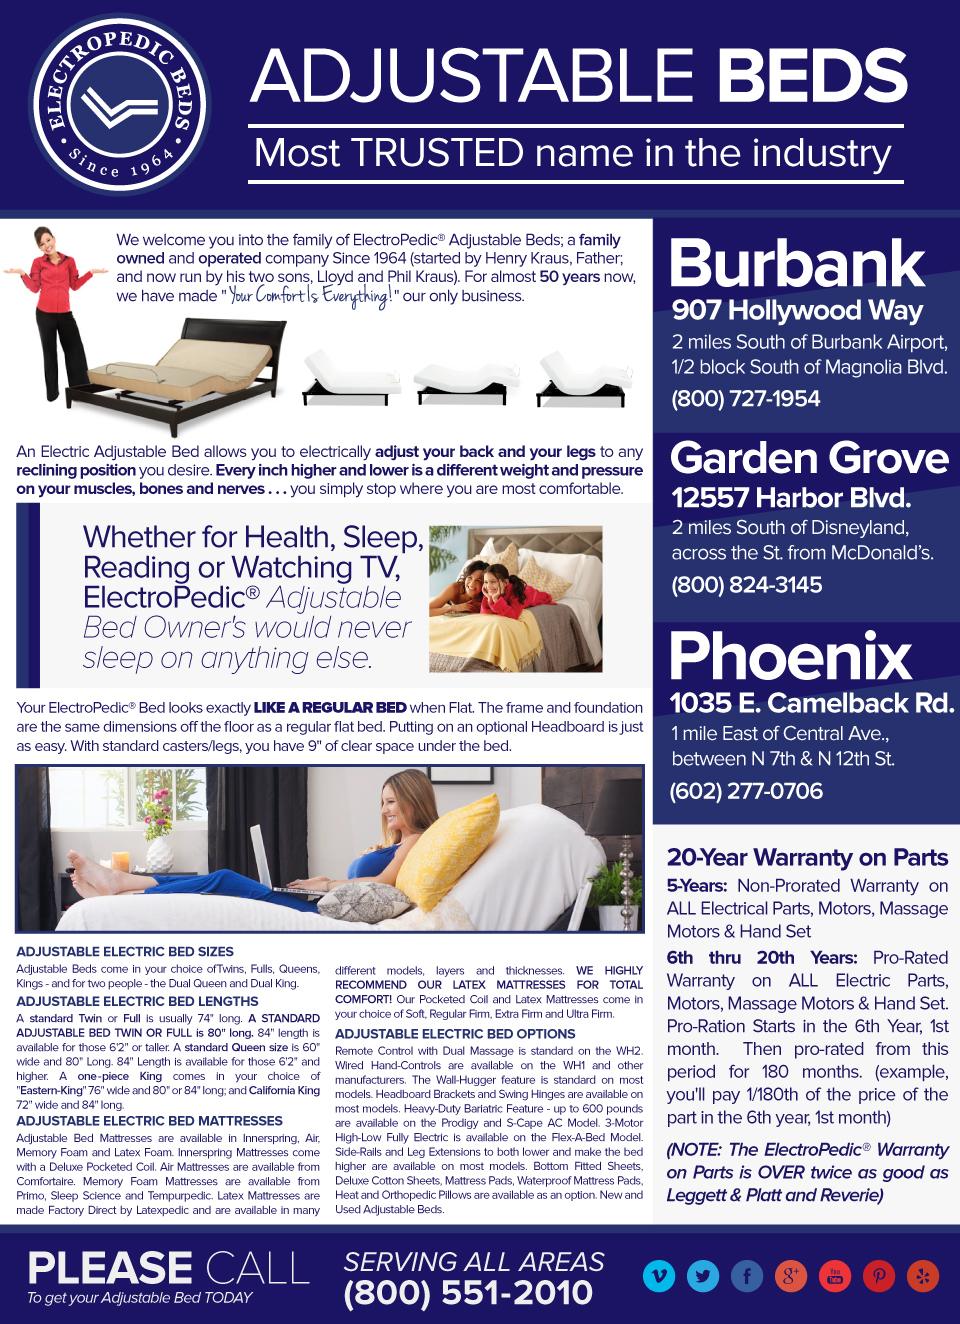 phoenix adjustable bed manufacturers